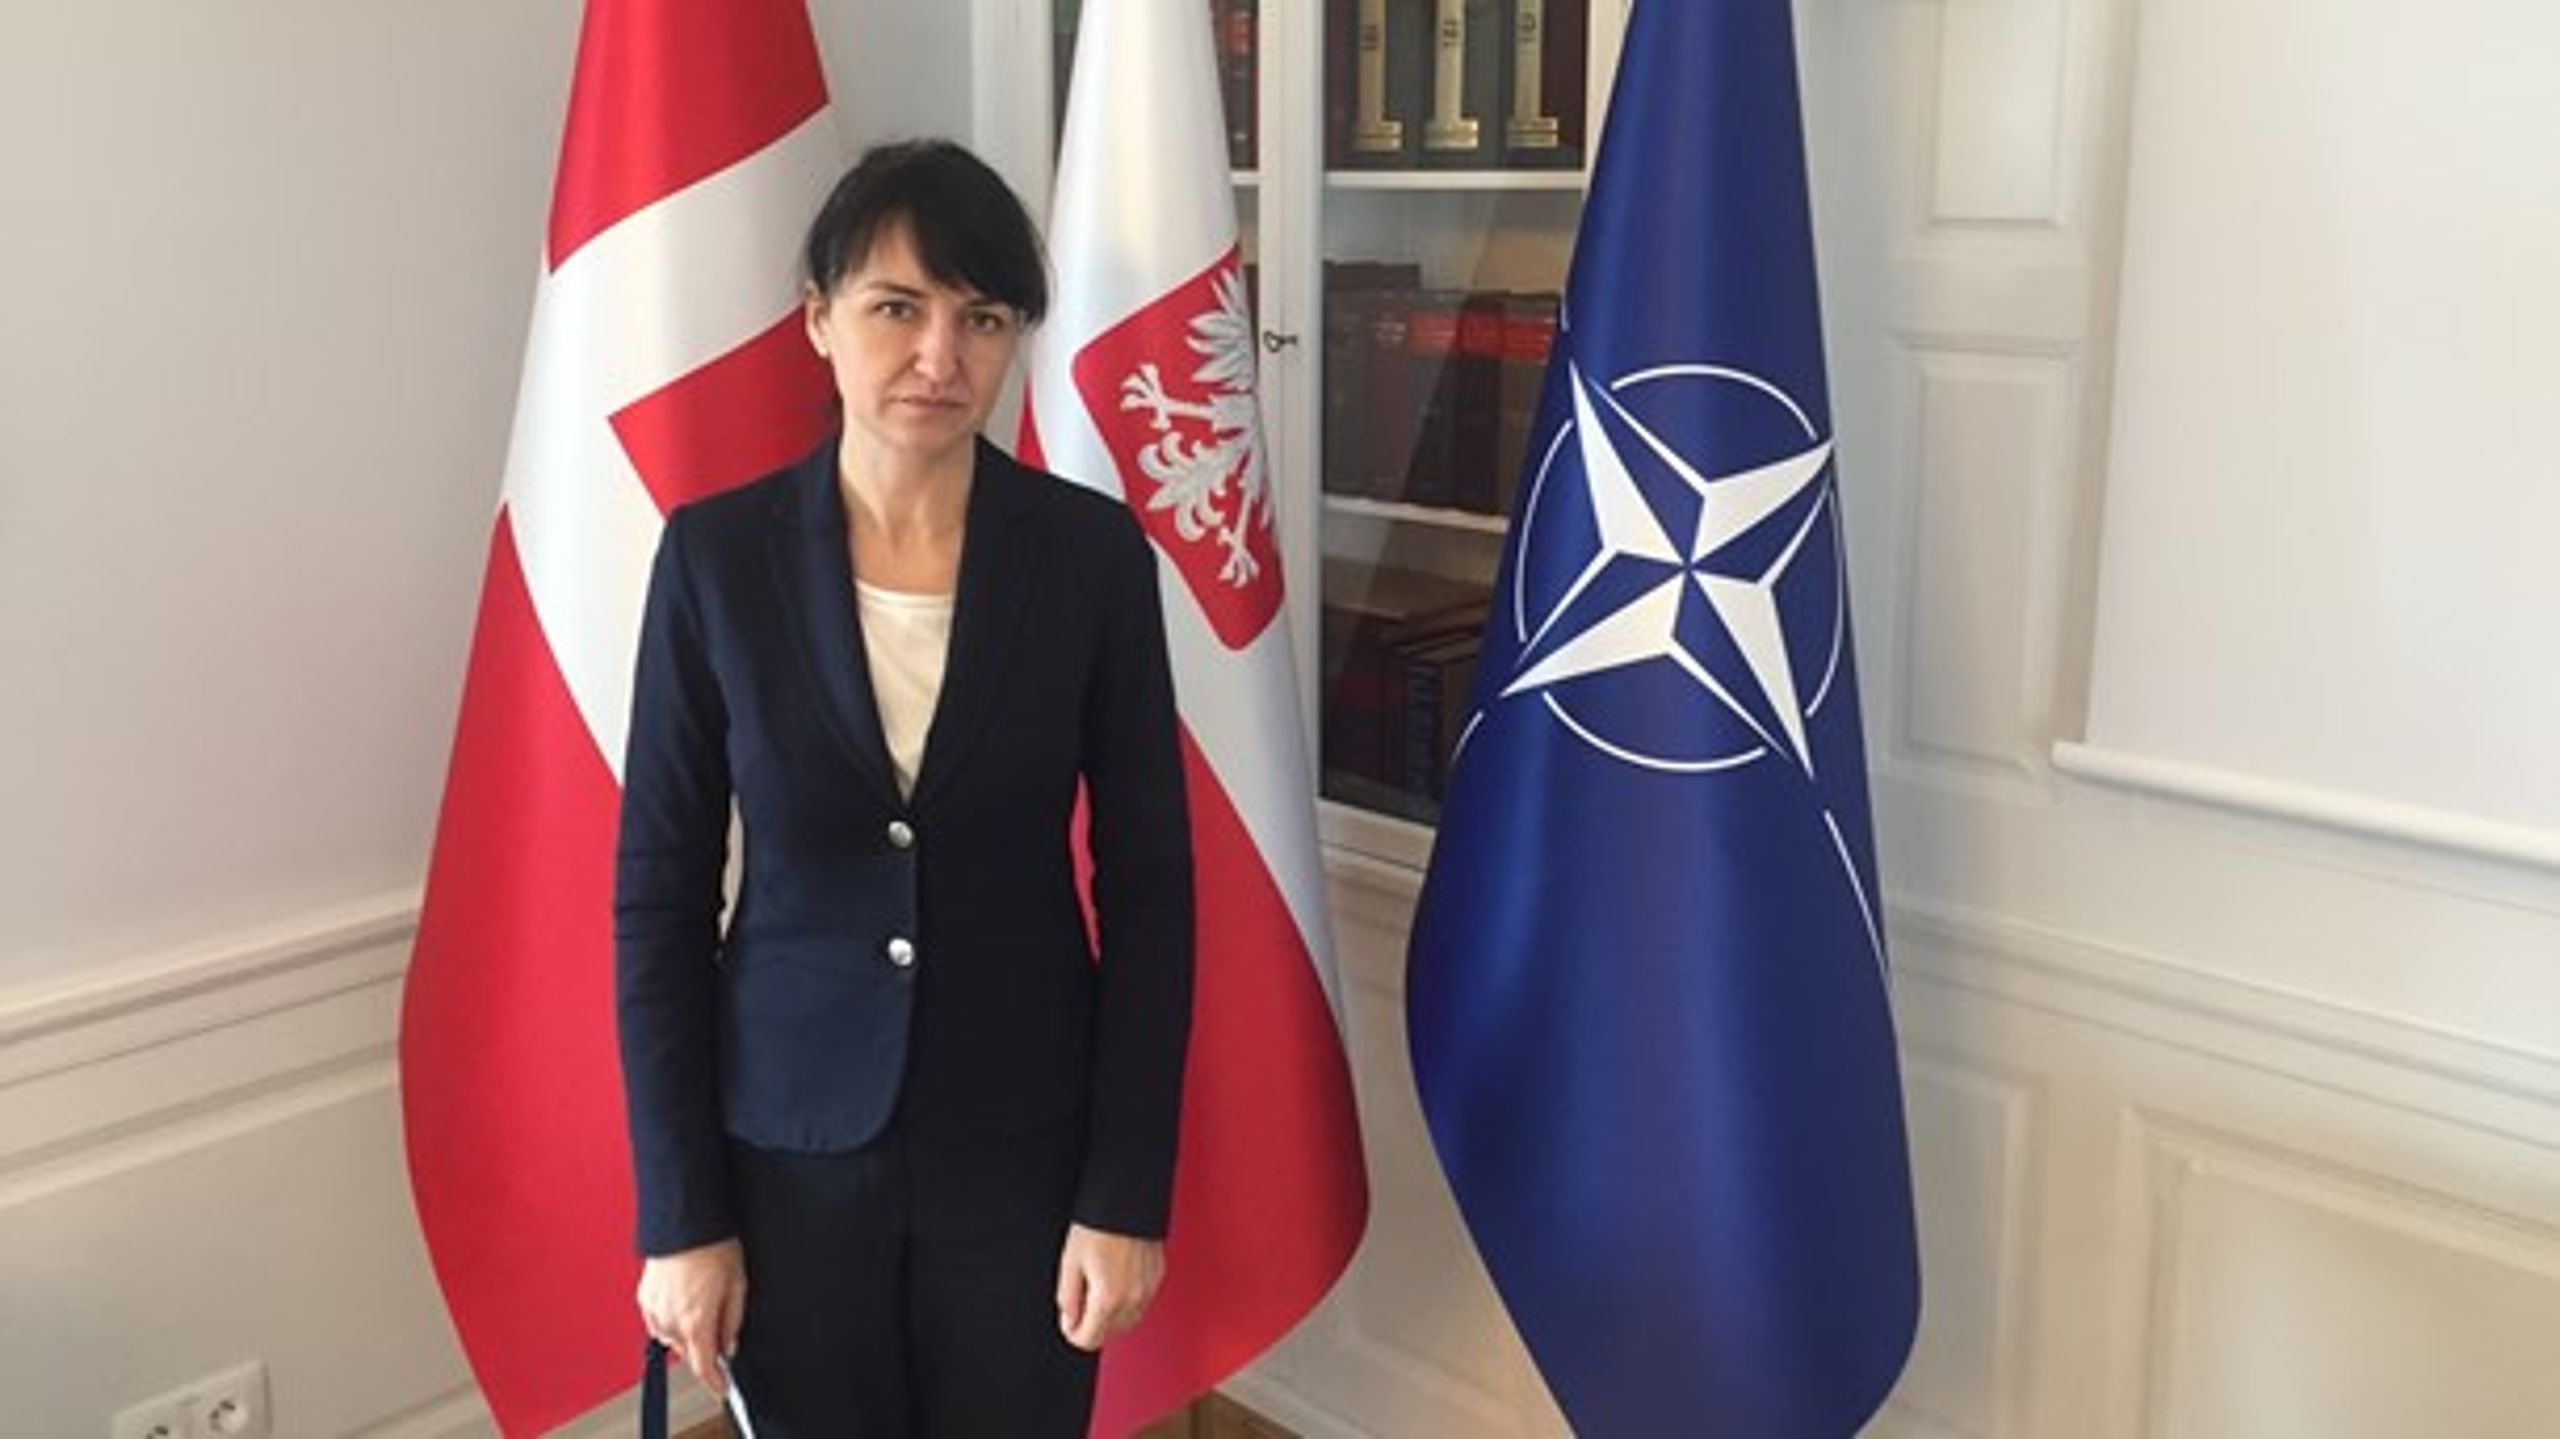 "Vi tager den fælles forpligtelse seriøst, og vi forstår budskabet fra den amerikanske administration som en opfordring til at tage Nato-forpligtelsen seriøst," siger Polens ambassadør til Danmark, Henryka Moscicka-Dendys.